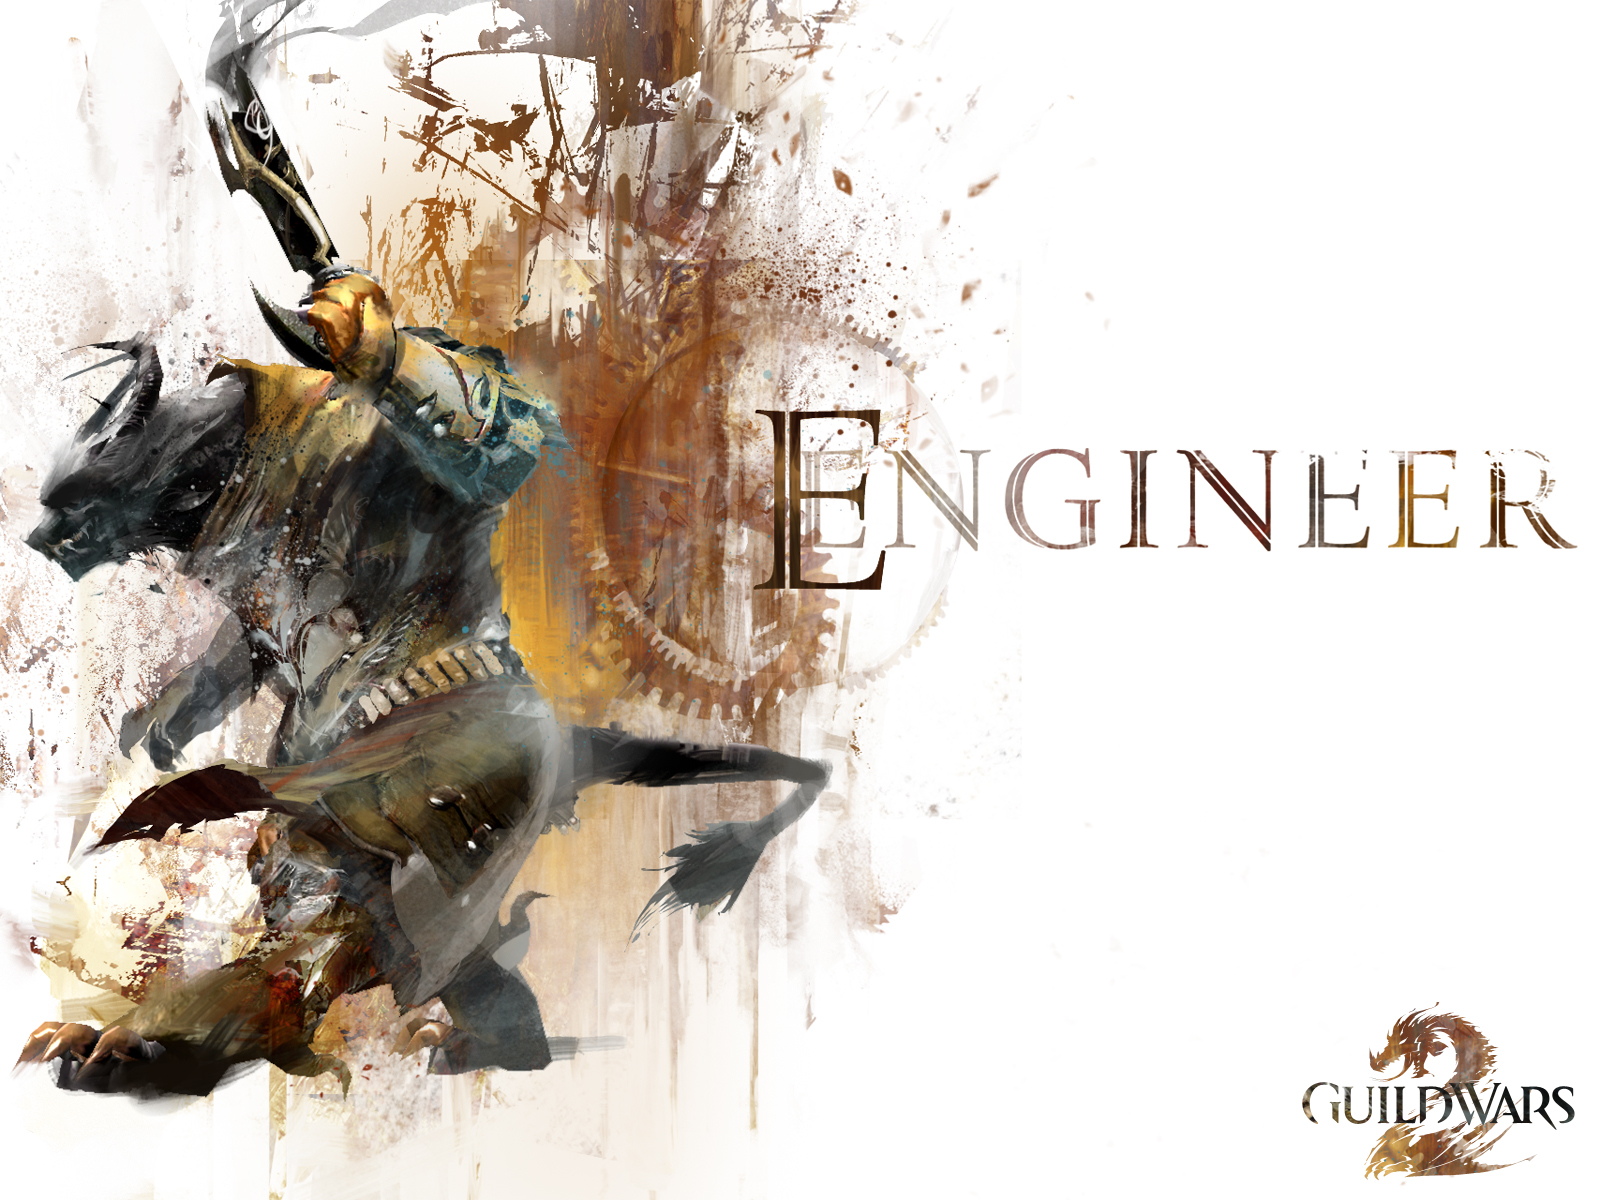 Engineer Guild Wars Wallpaper Gw2